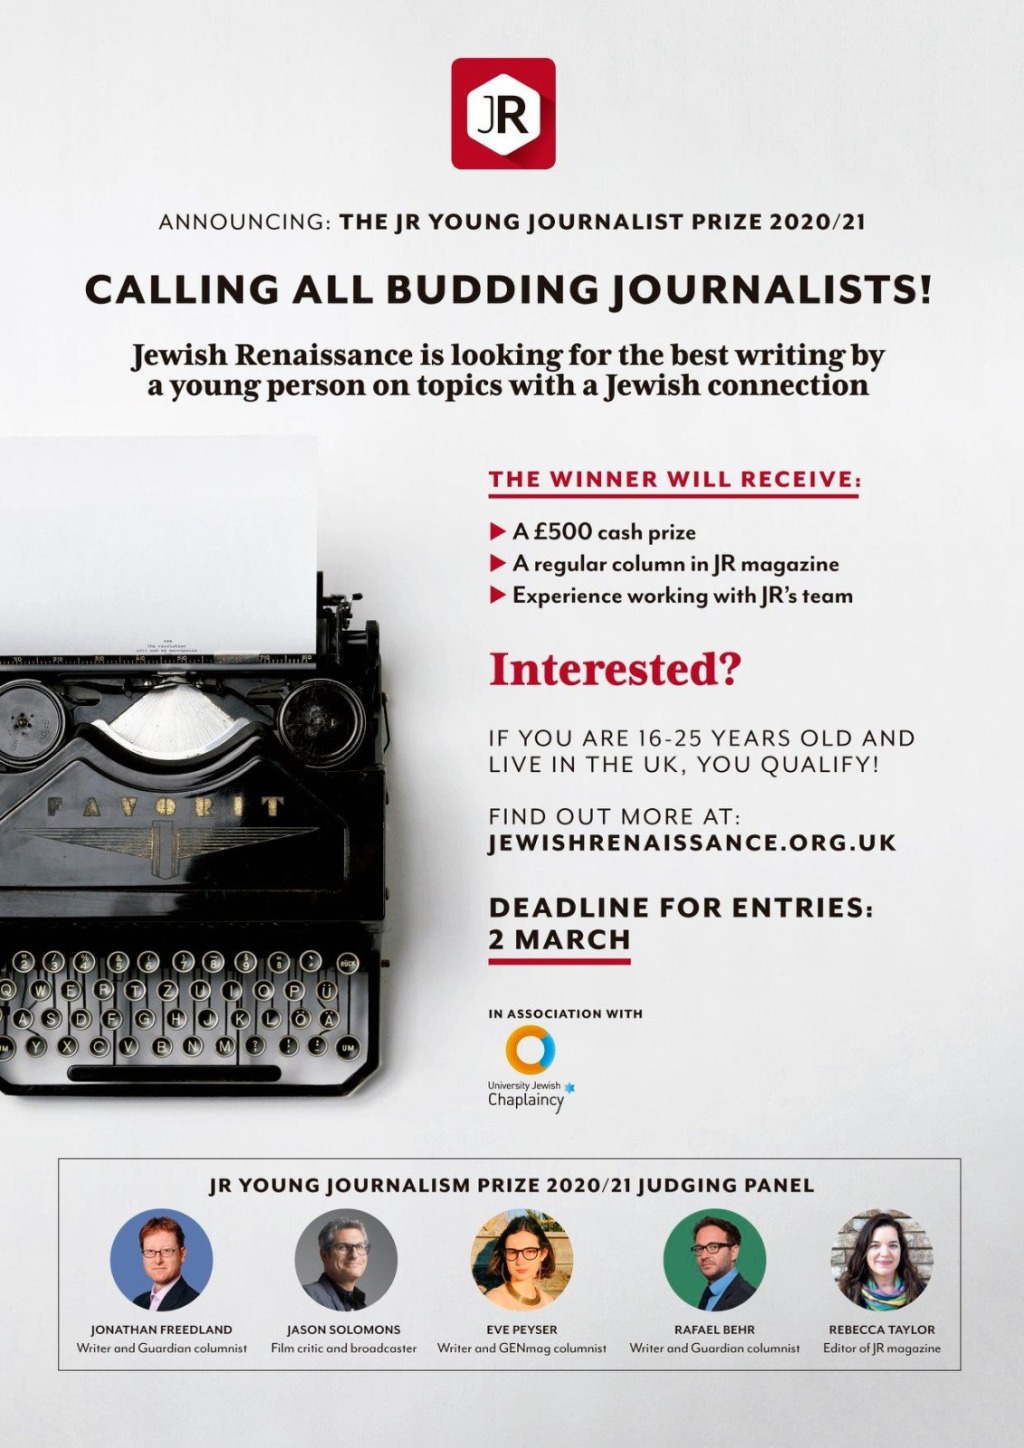 ANNOUNCEMENT: Jewish Renaissance Young Journalist Prize 2020/21